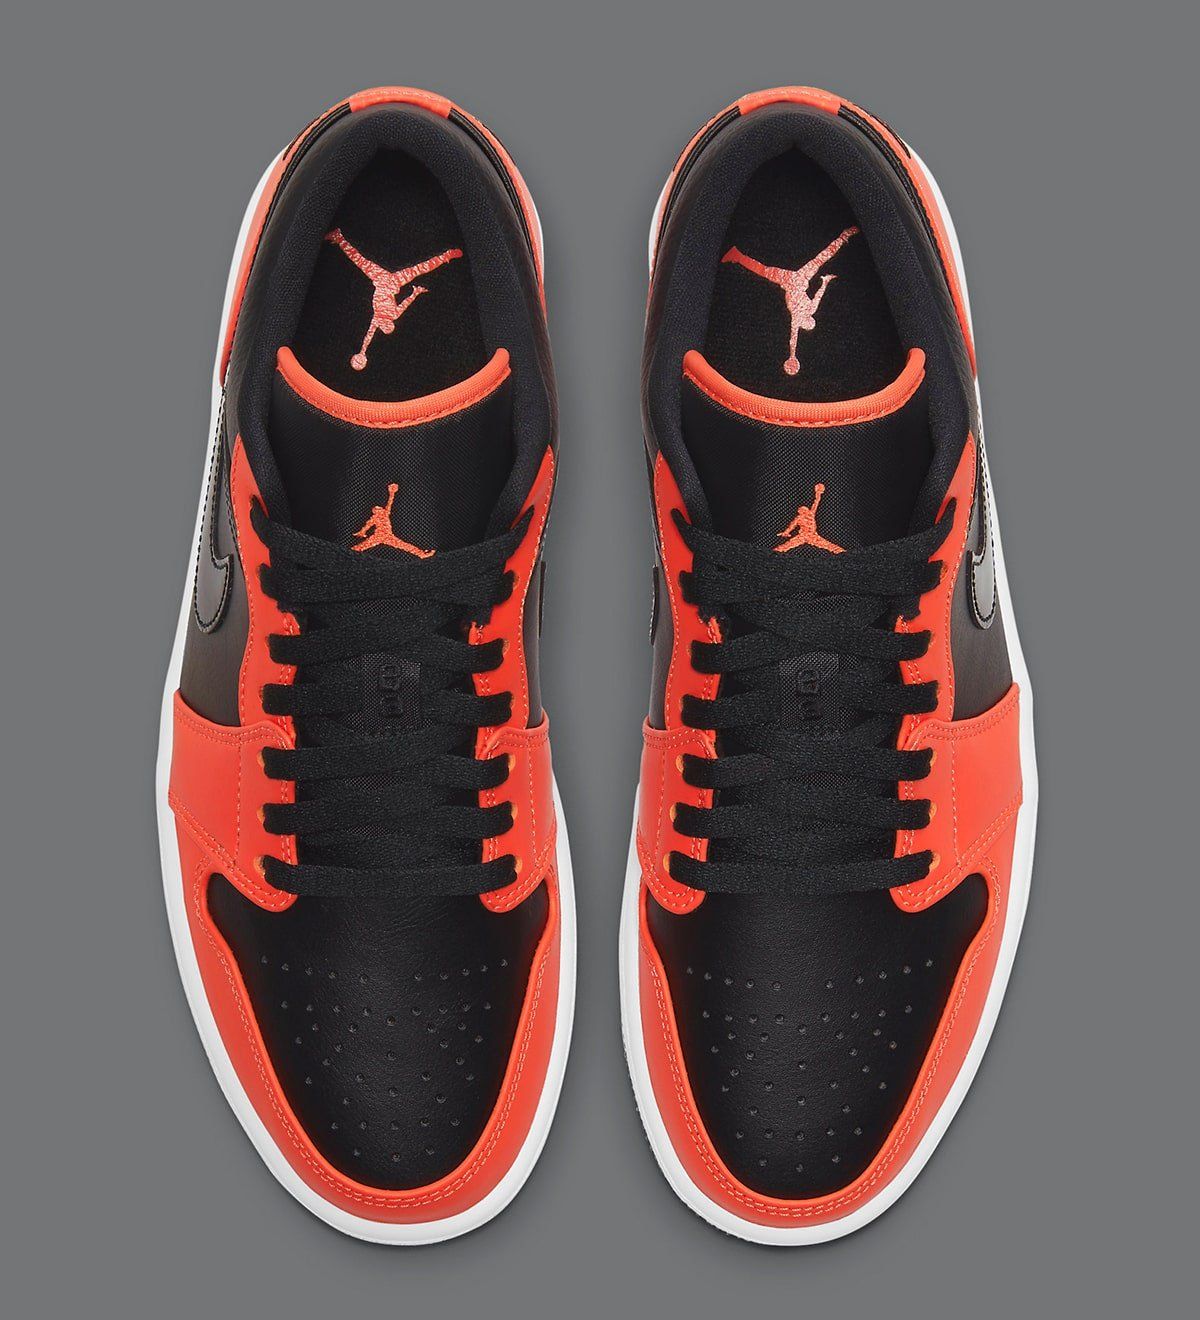 Air Jordan 1 Low Appears in Black & Orange HOUSE OF HEAT